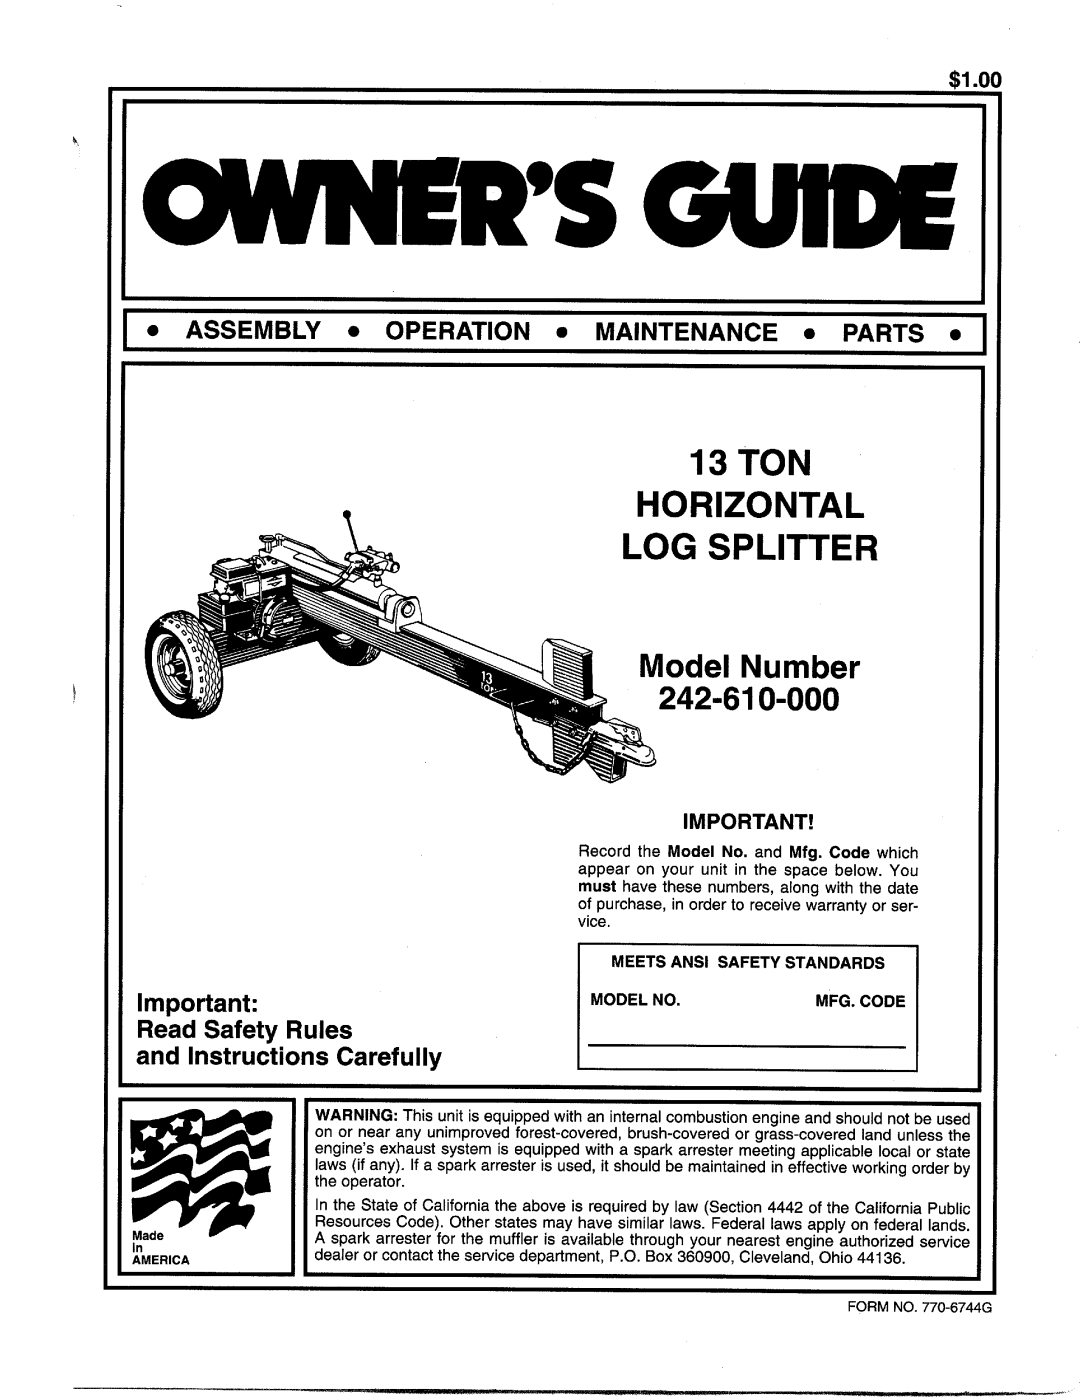 MTD 242-610-000 manual 